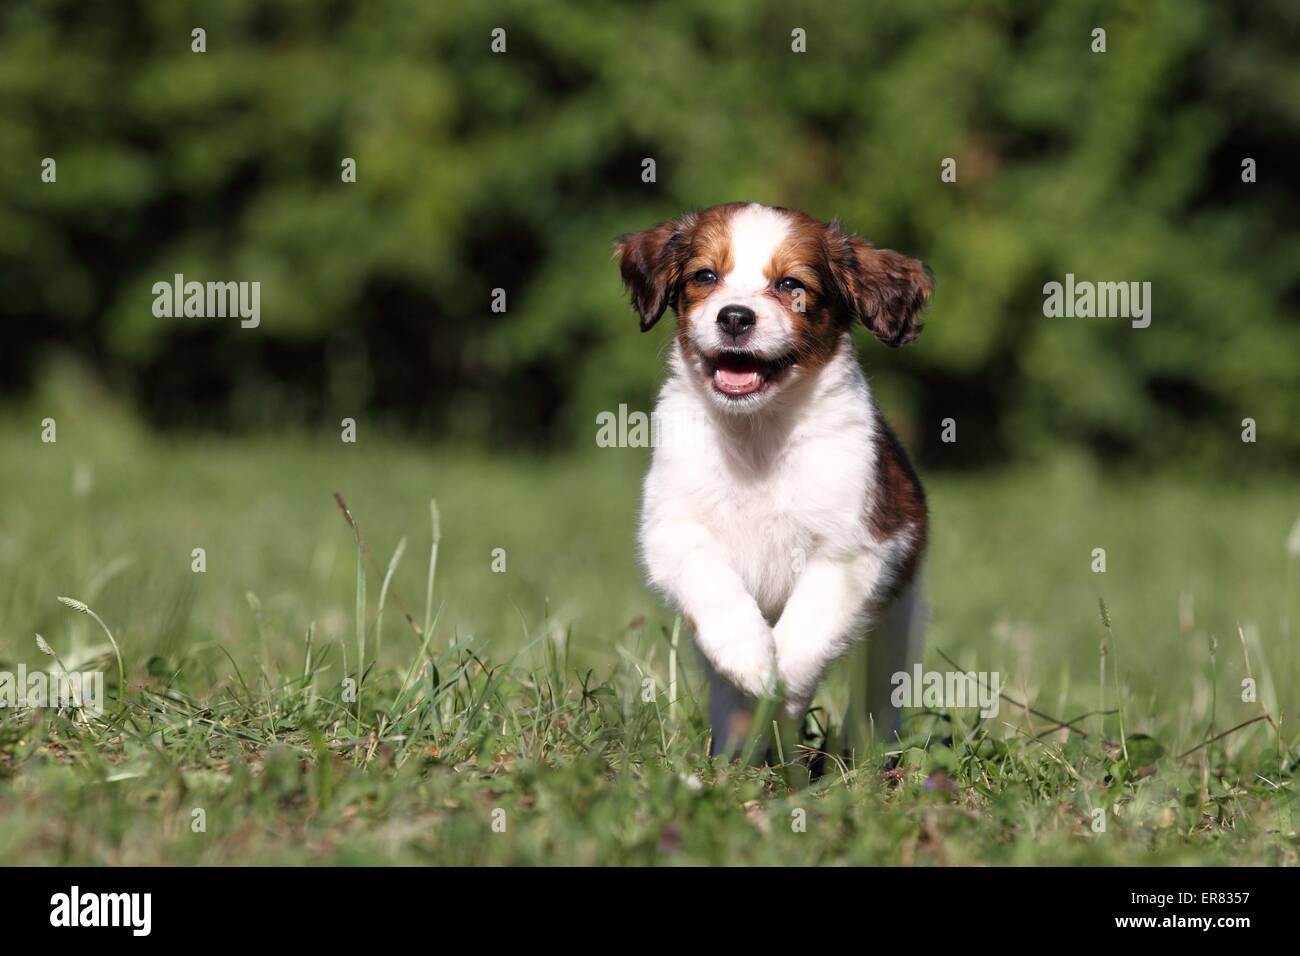 Kooikerhondje puppy Stock Photo